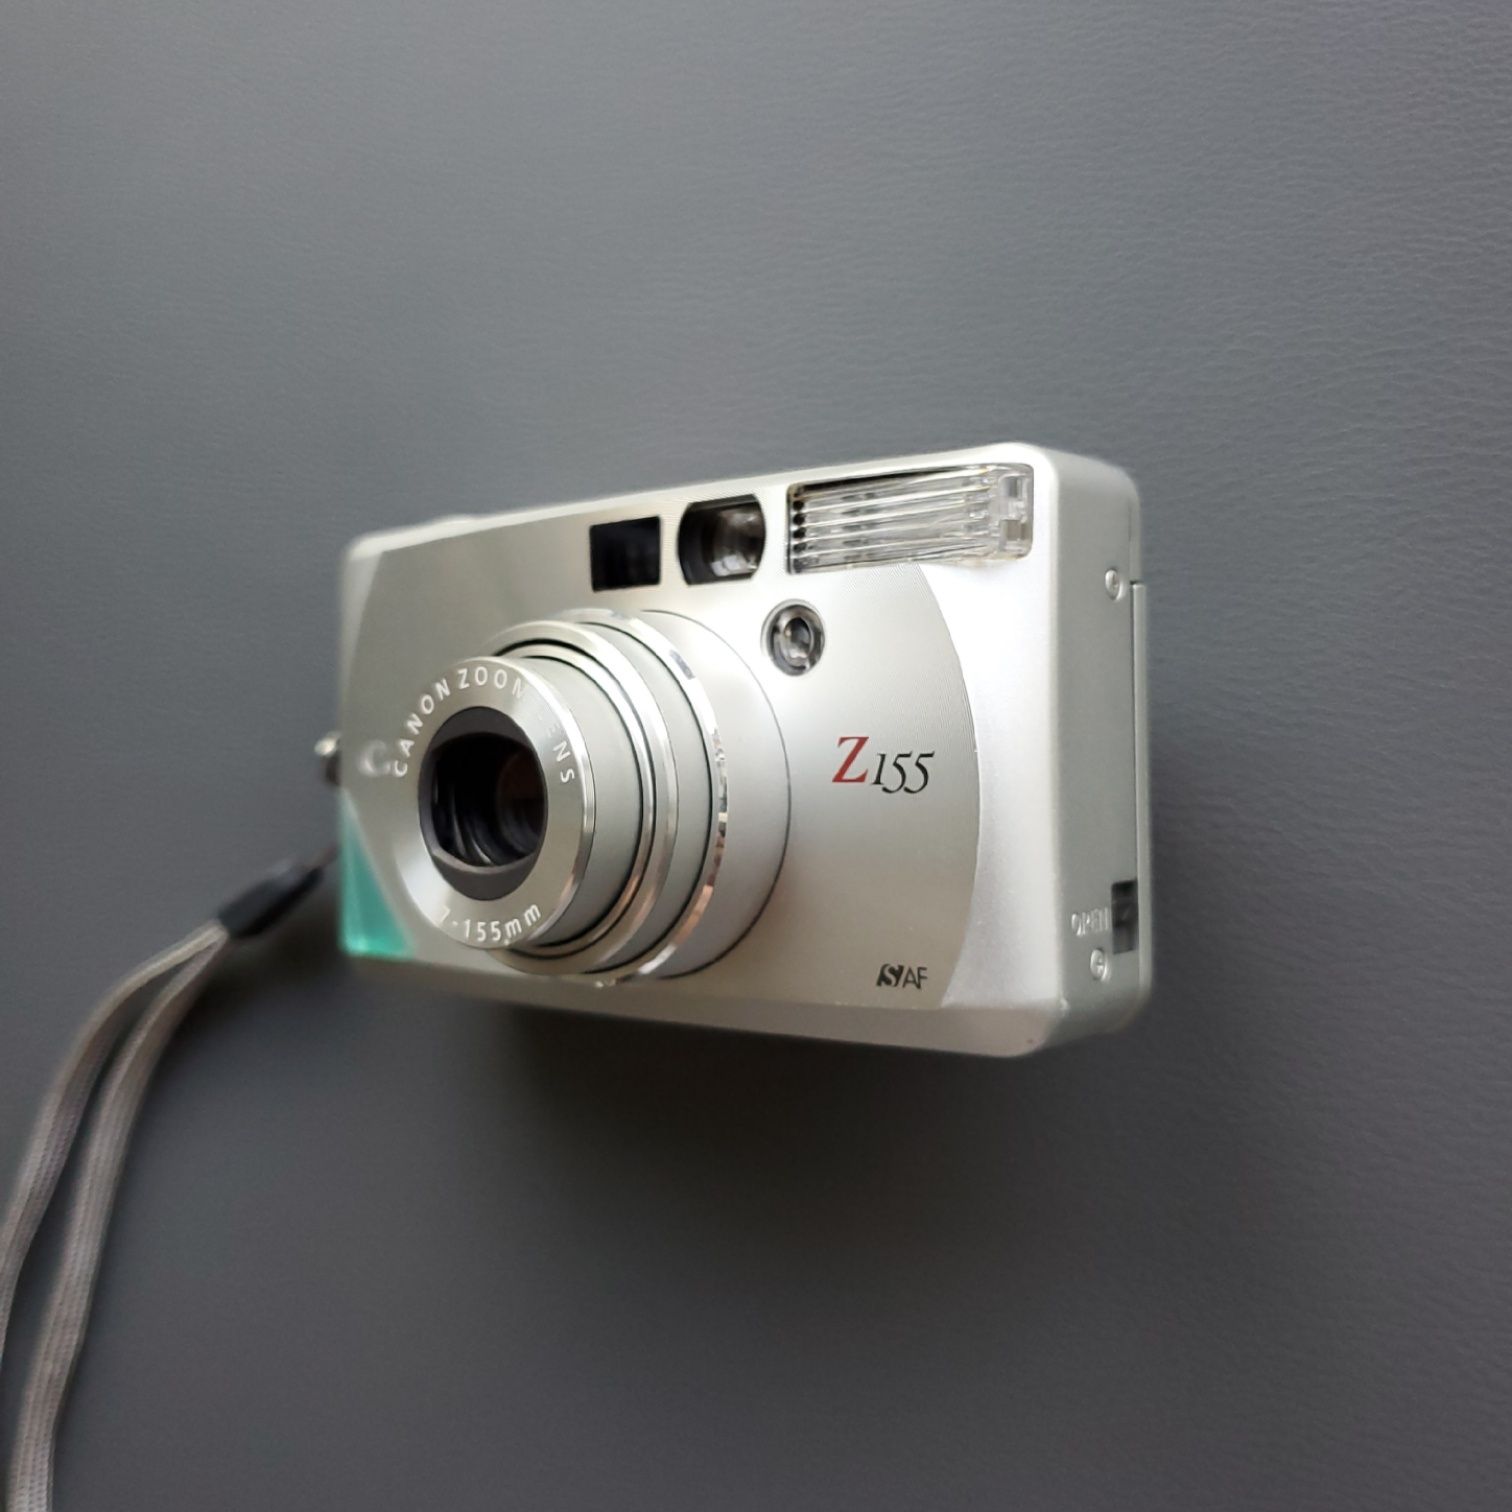 Пленочный премиум-компакт фотоаппарат Canon Sure Shot Z155 тестирован